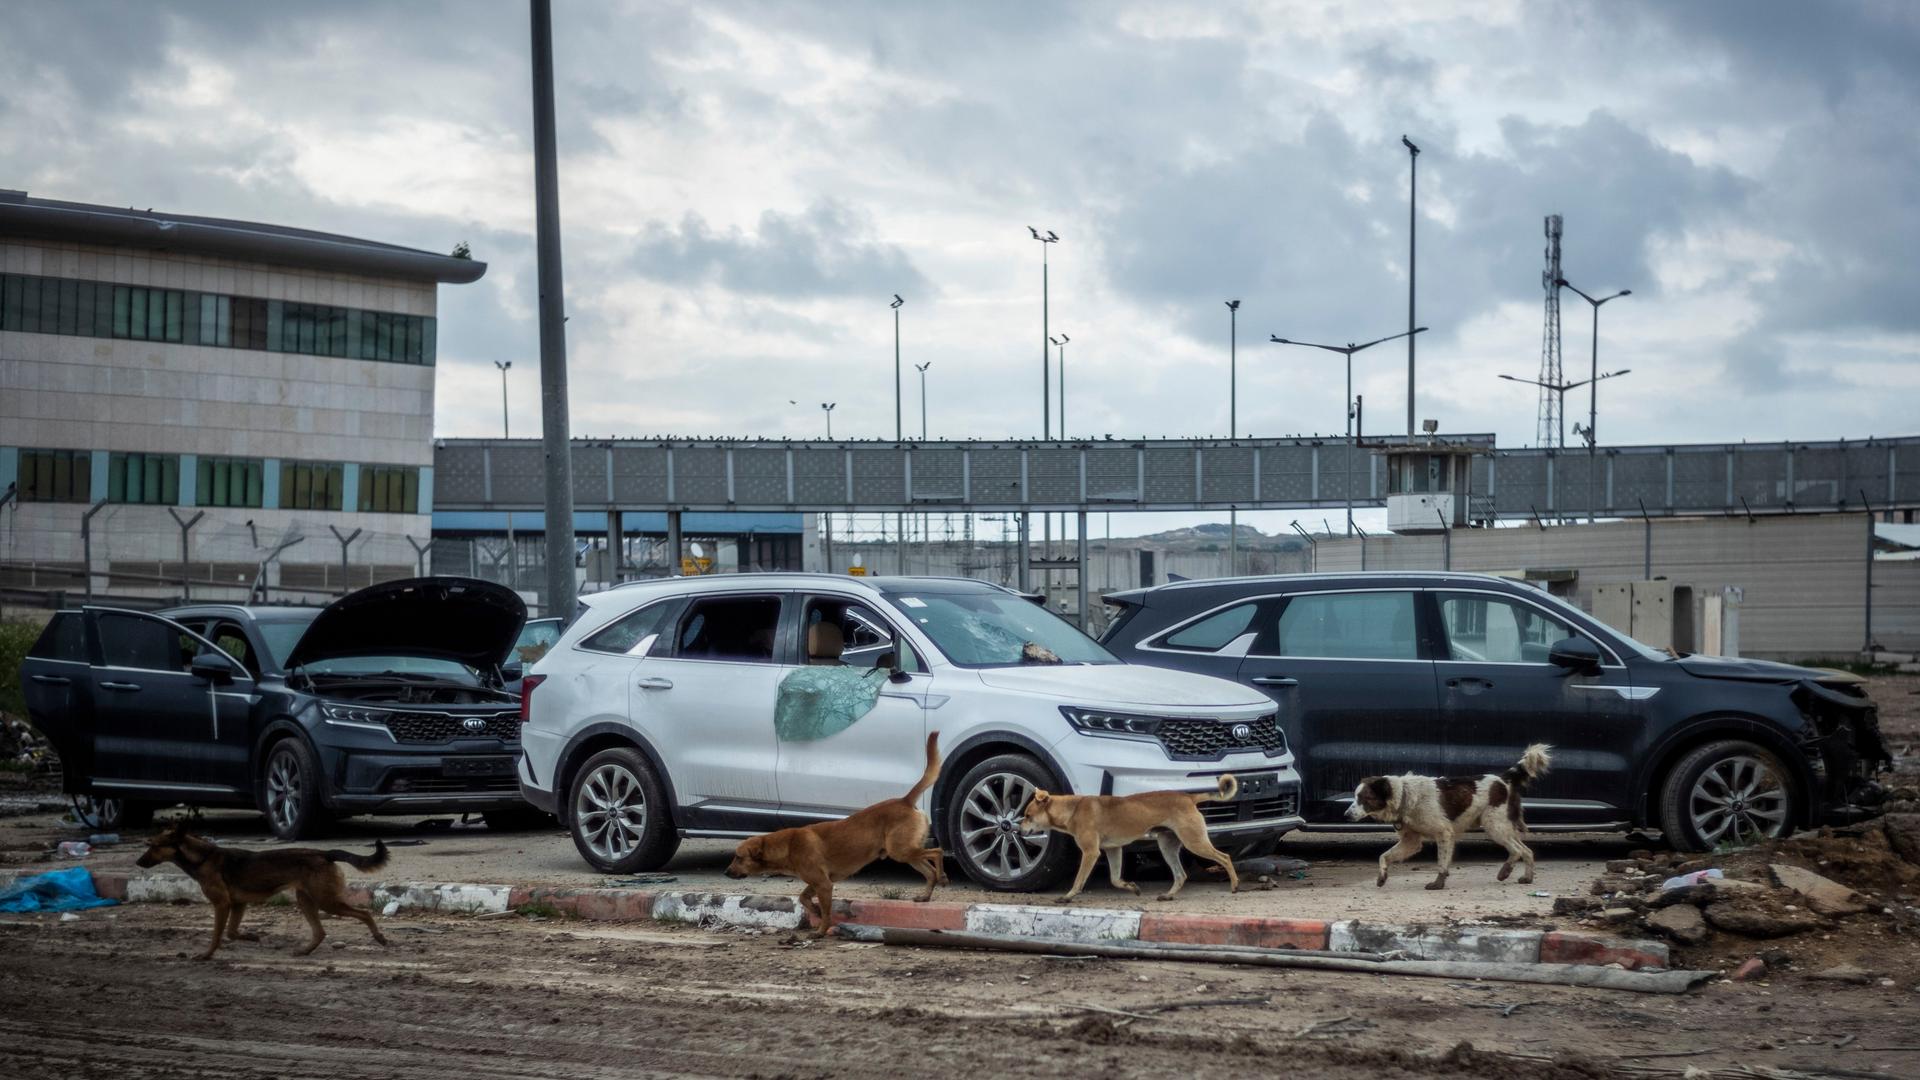 Israel, Grenzübergang Erez: Hunde laufen zwischen zerstörten Fahrzeugen herum, die am Terminal des Grenzübergangs Erez stehen.